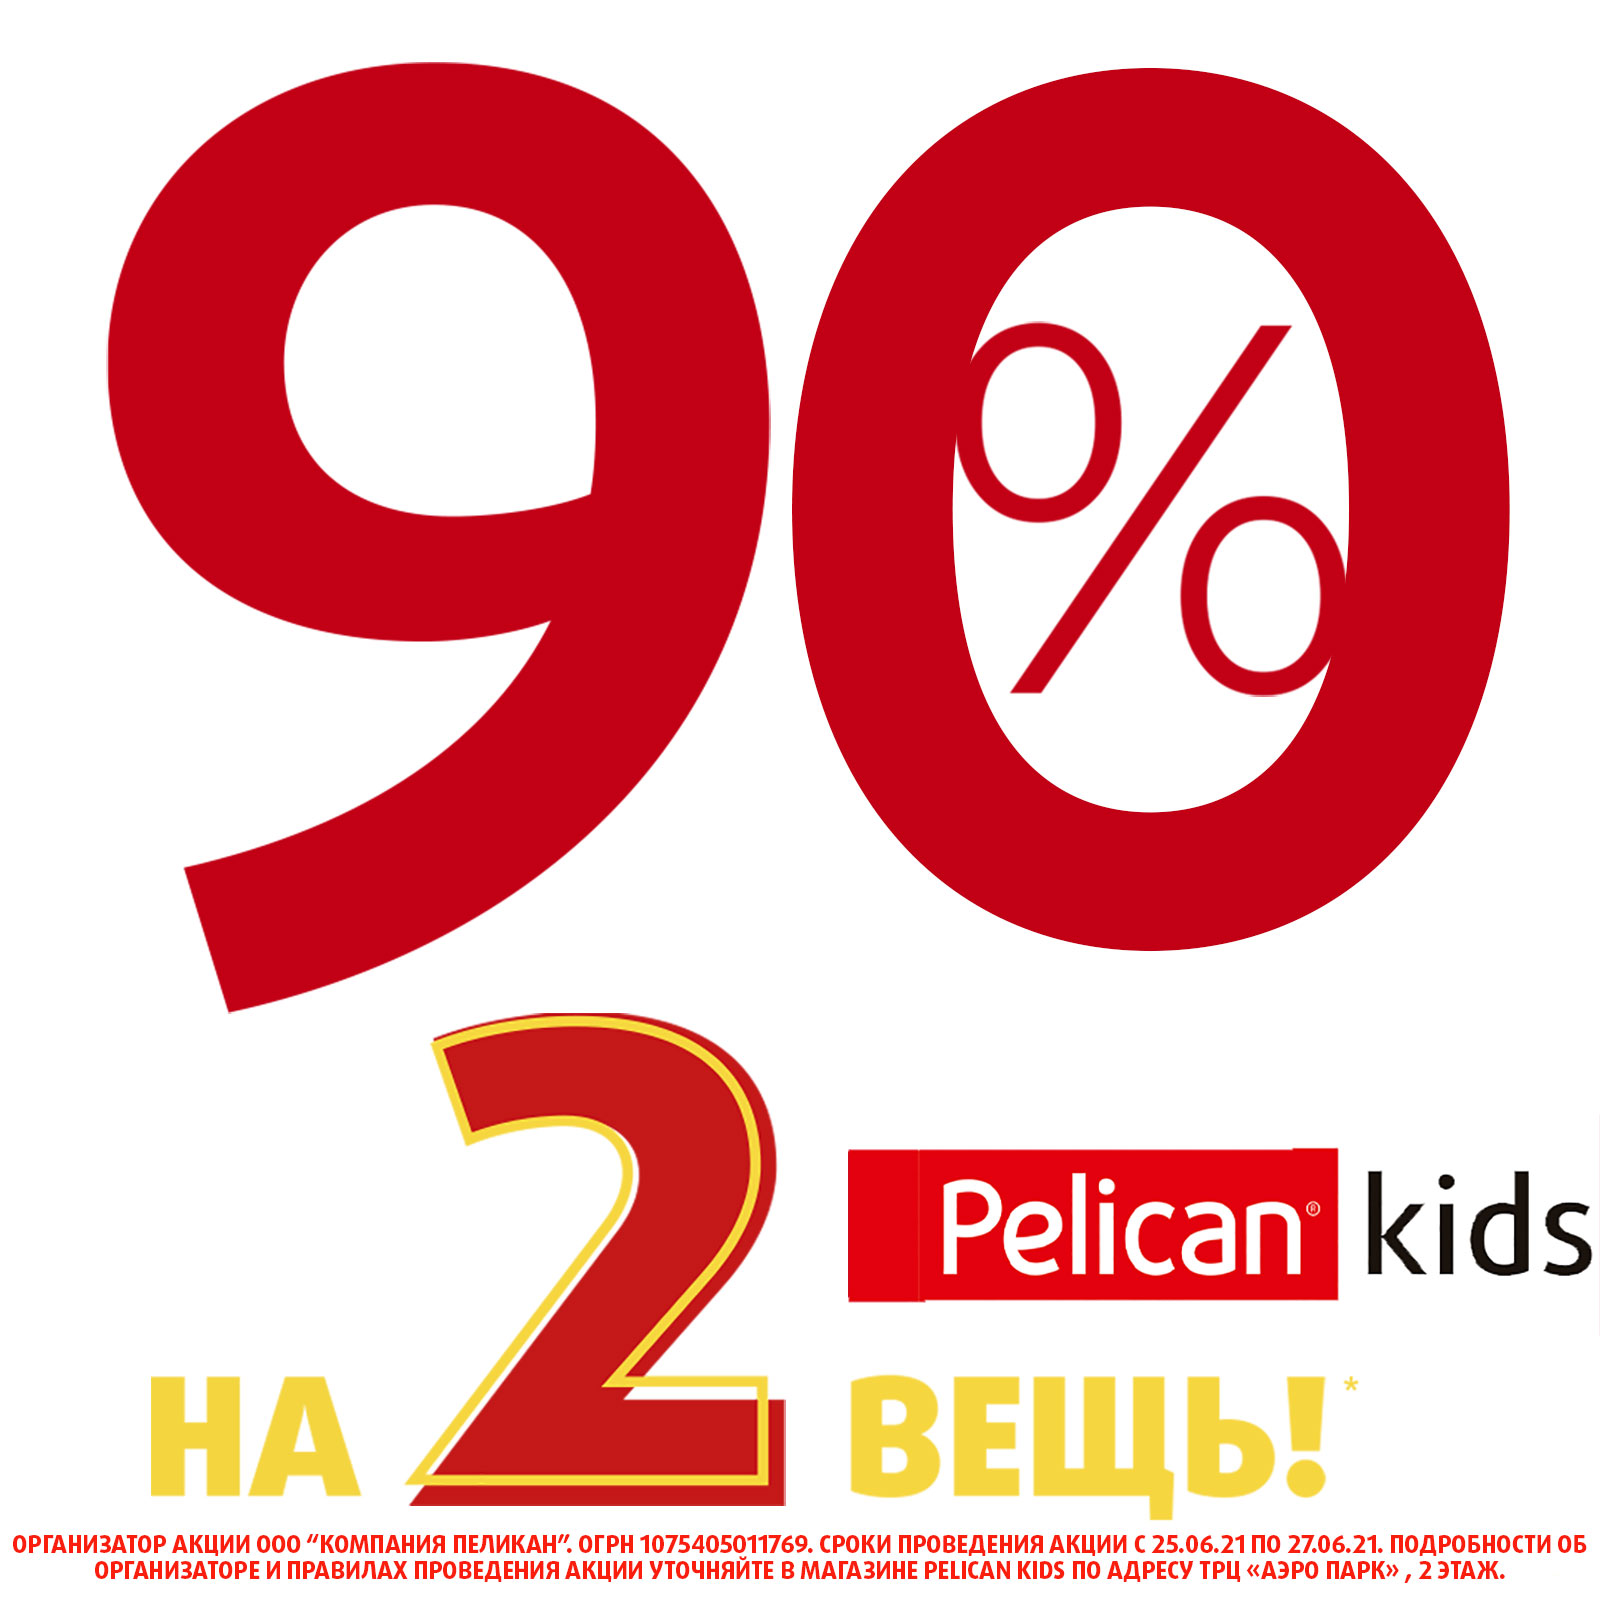 Скидки в магазине Pelican Kids!